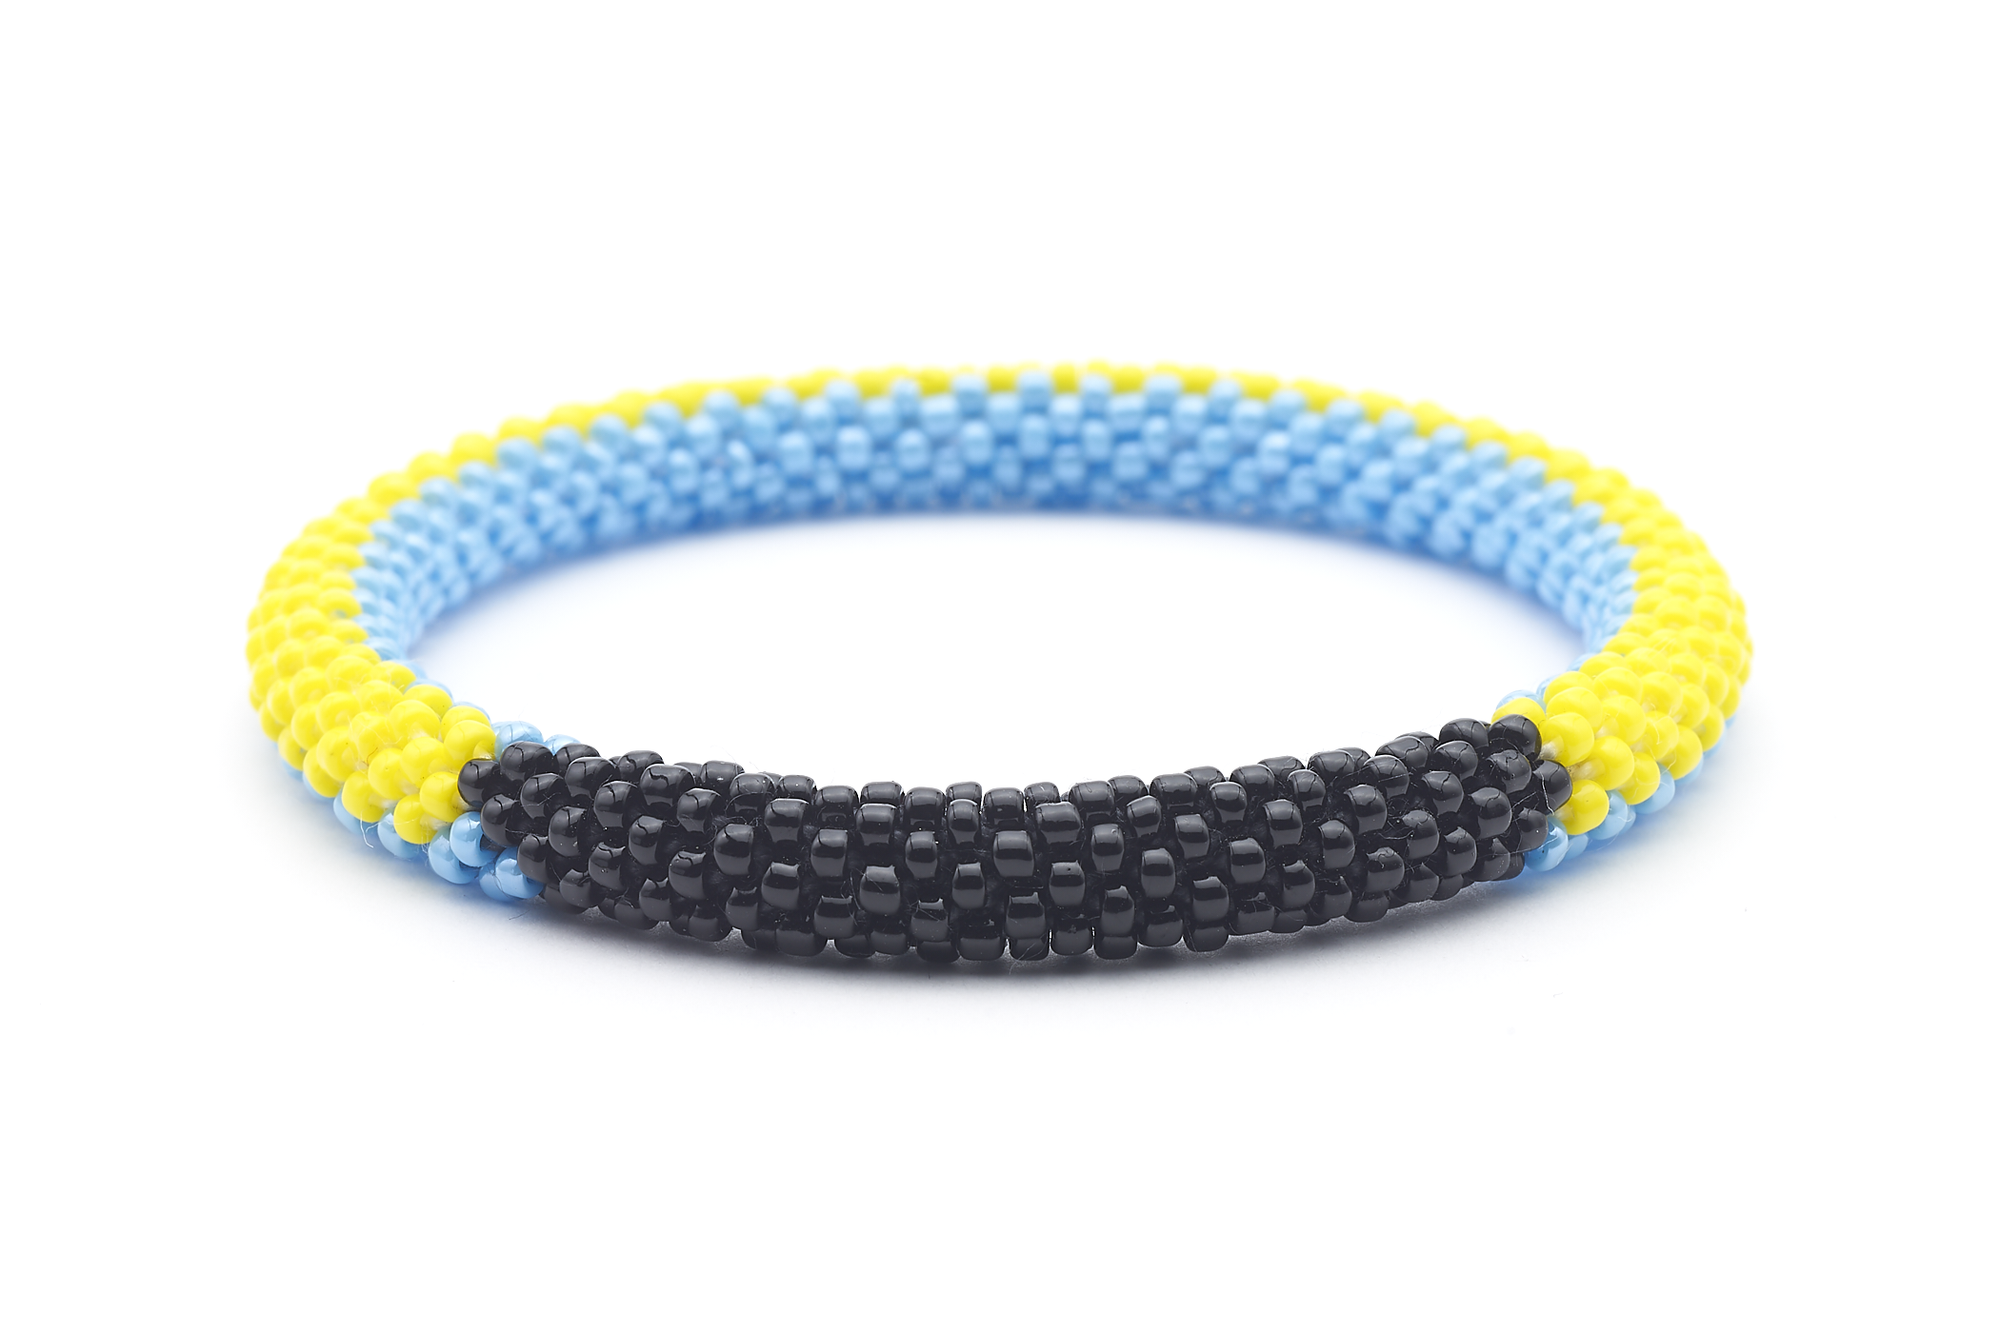 Sashka Co. Original Bracelet Yellow / Black / Turquoise Bahama Bracelet